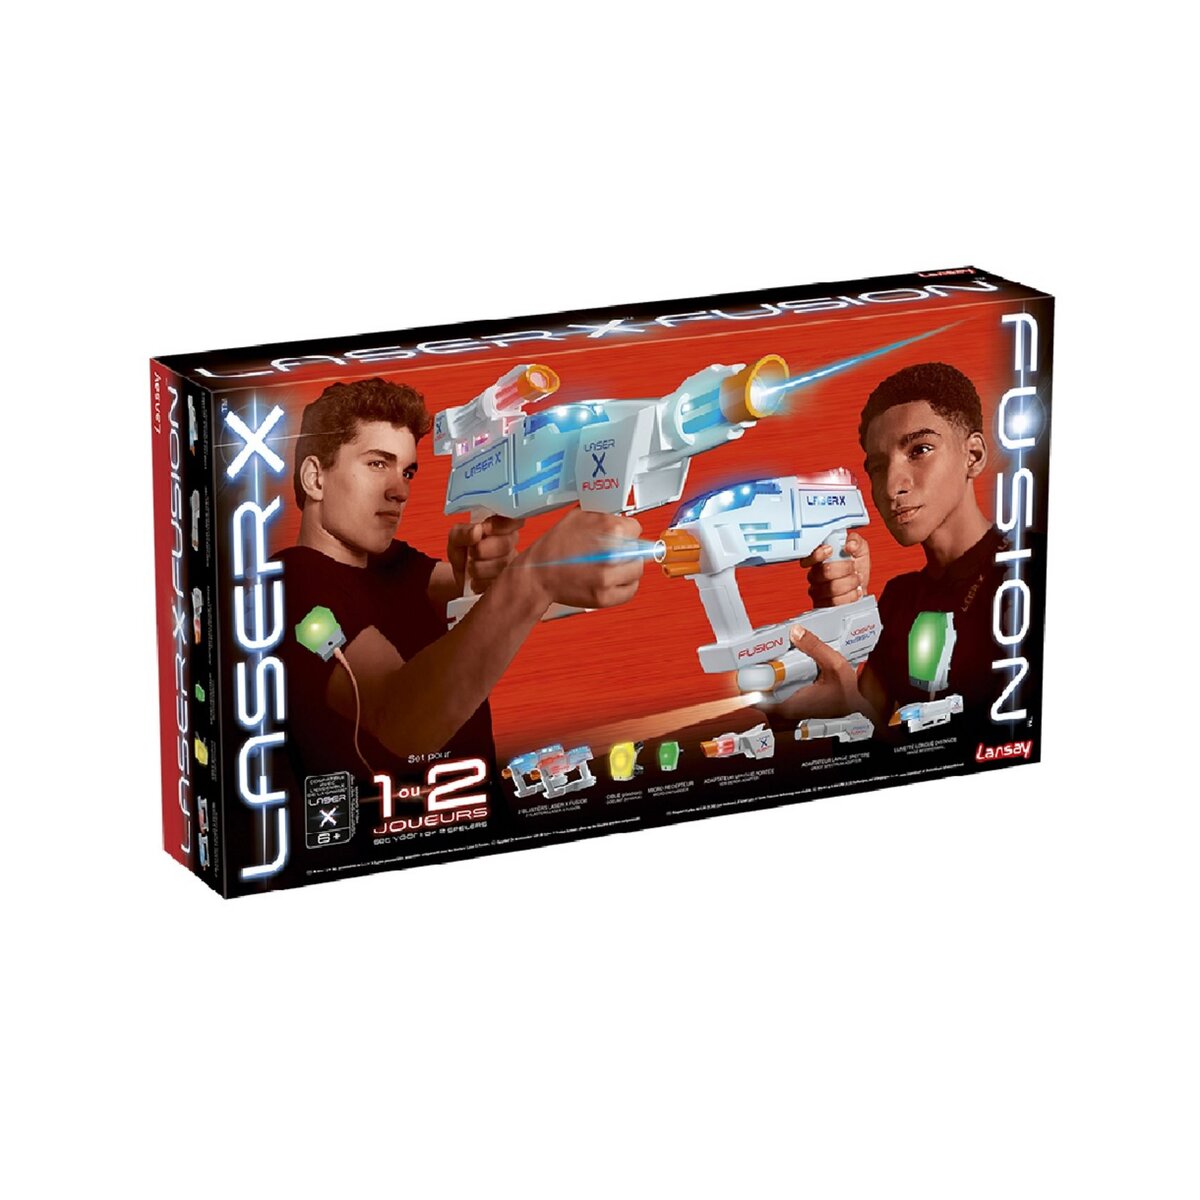 LANSAY Pack de 2 blasters avec accessoires - Laser X Fusion double